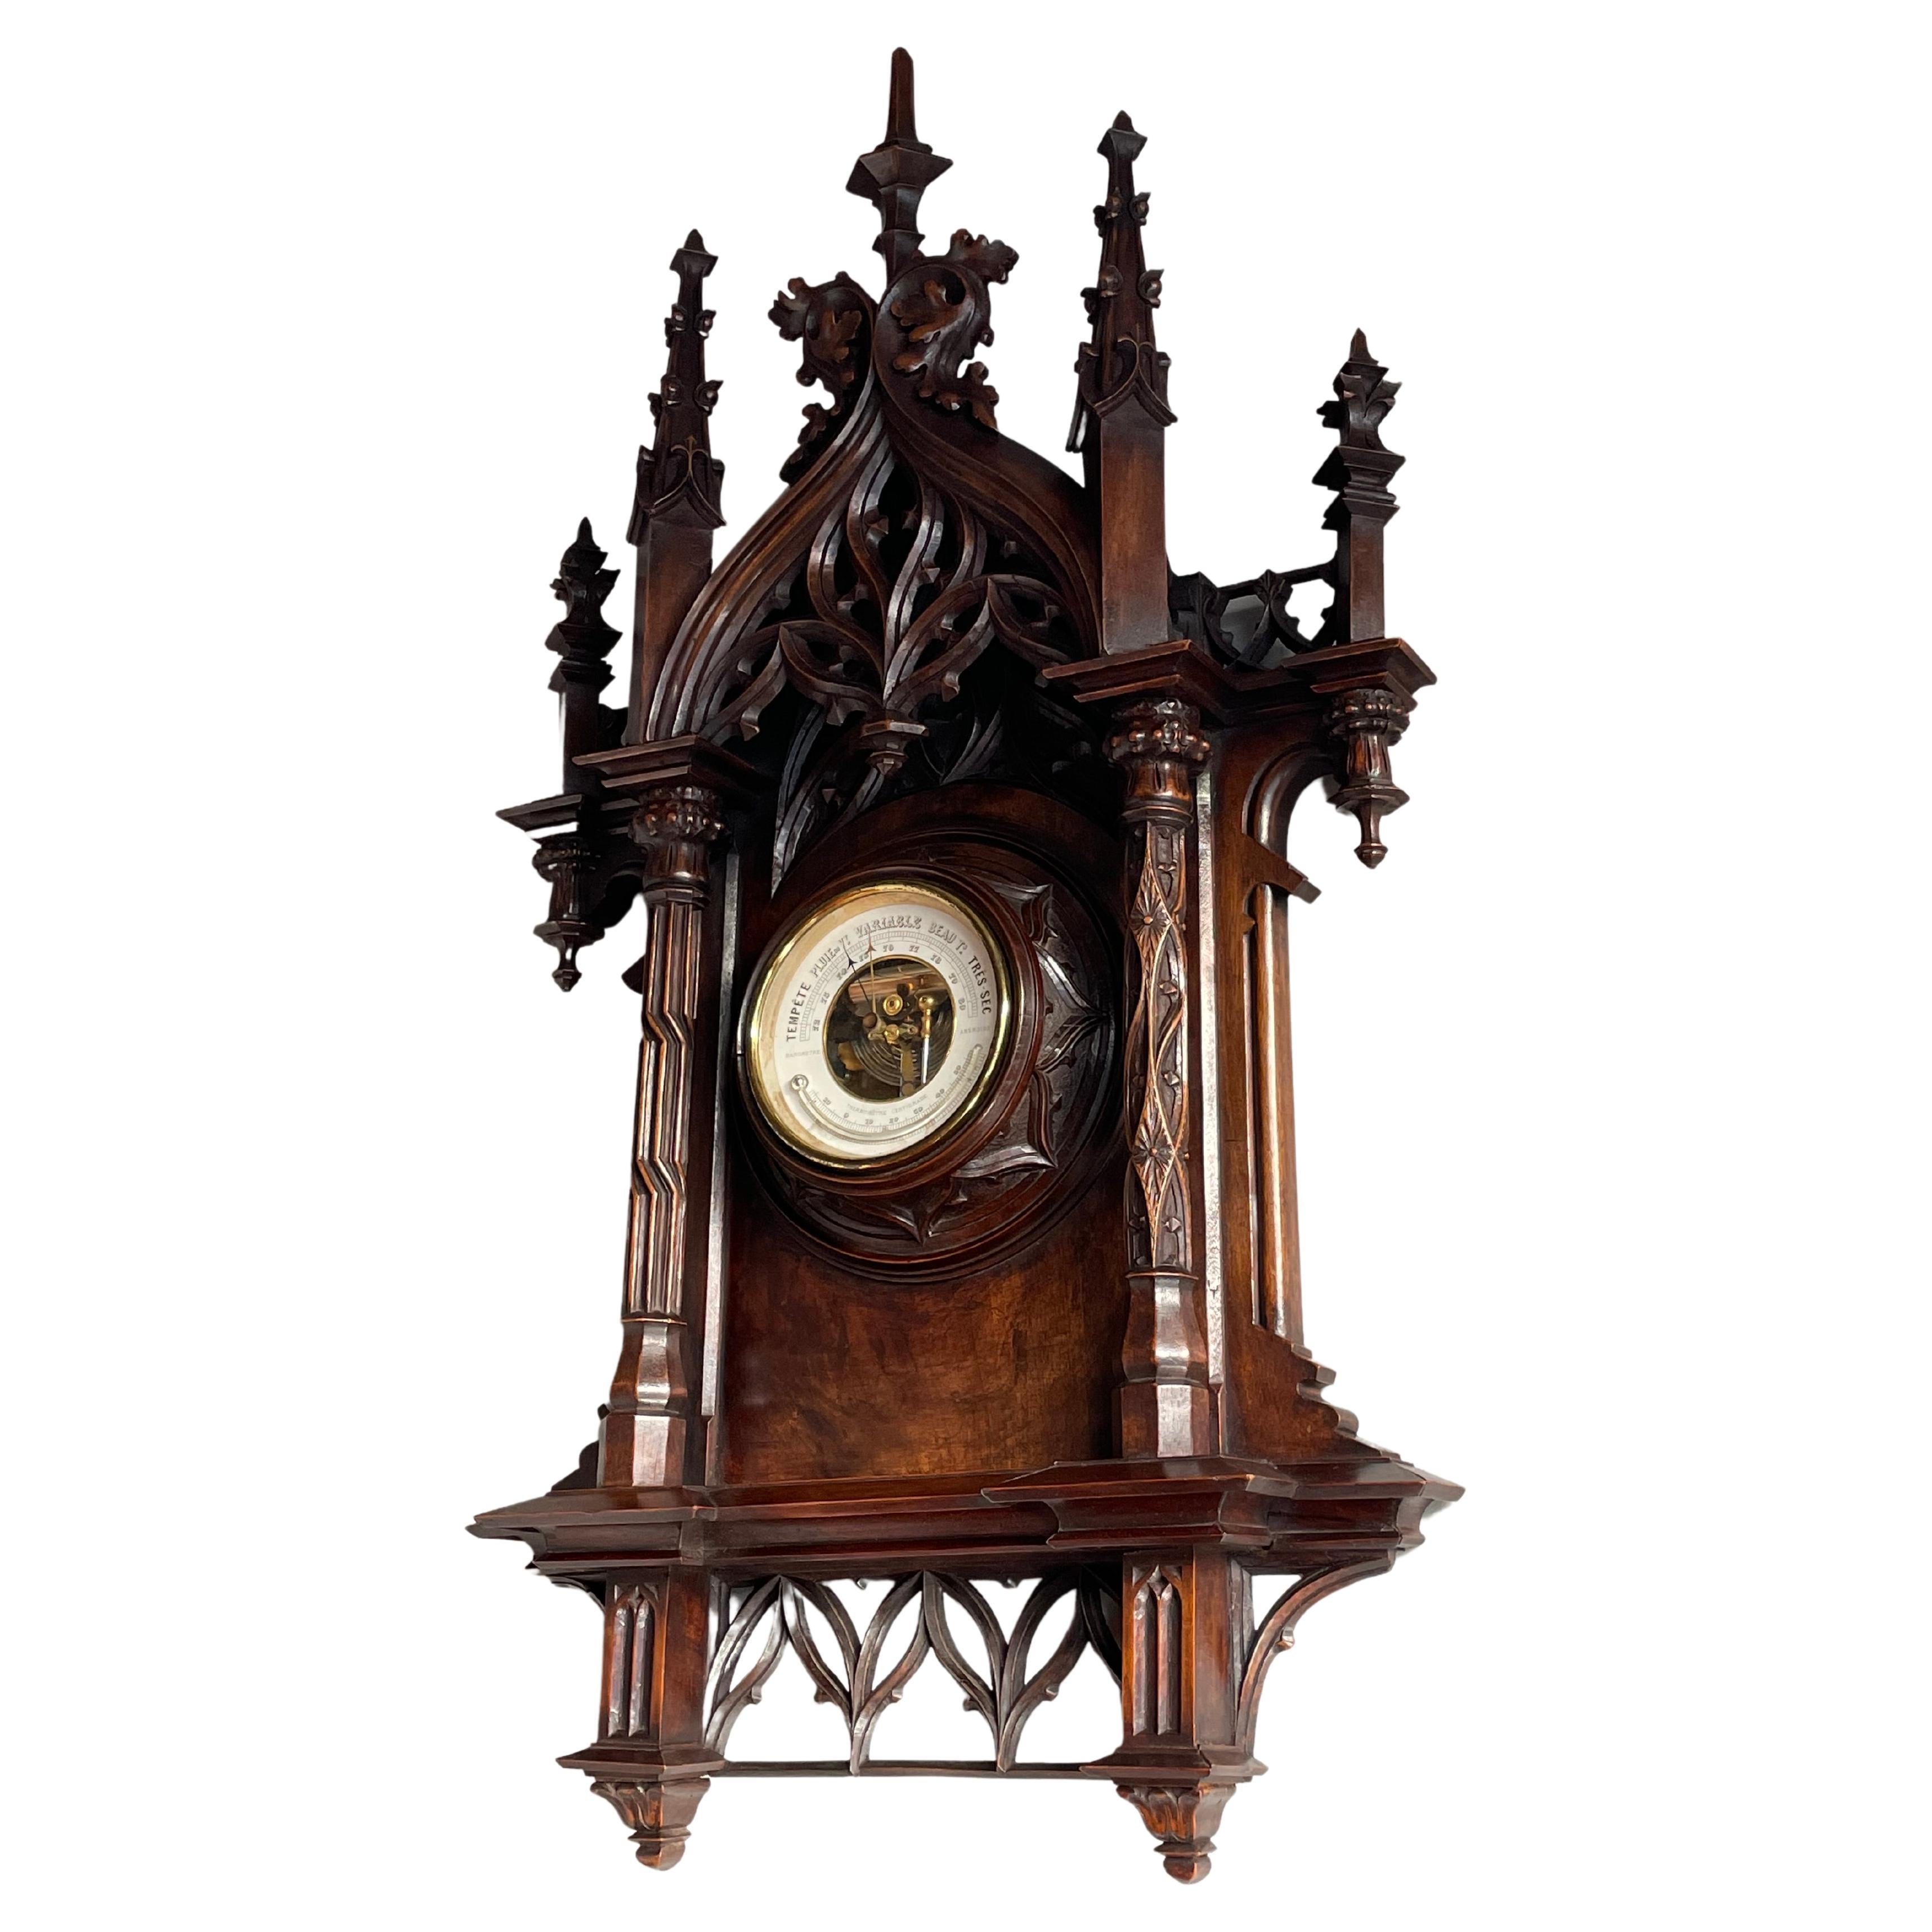 Le plus grand baromètre et thermomètre de style néo-gothique sculpté à la main, ancien et de haute qualité.